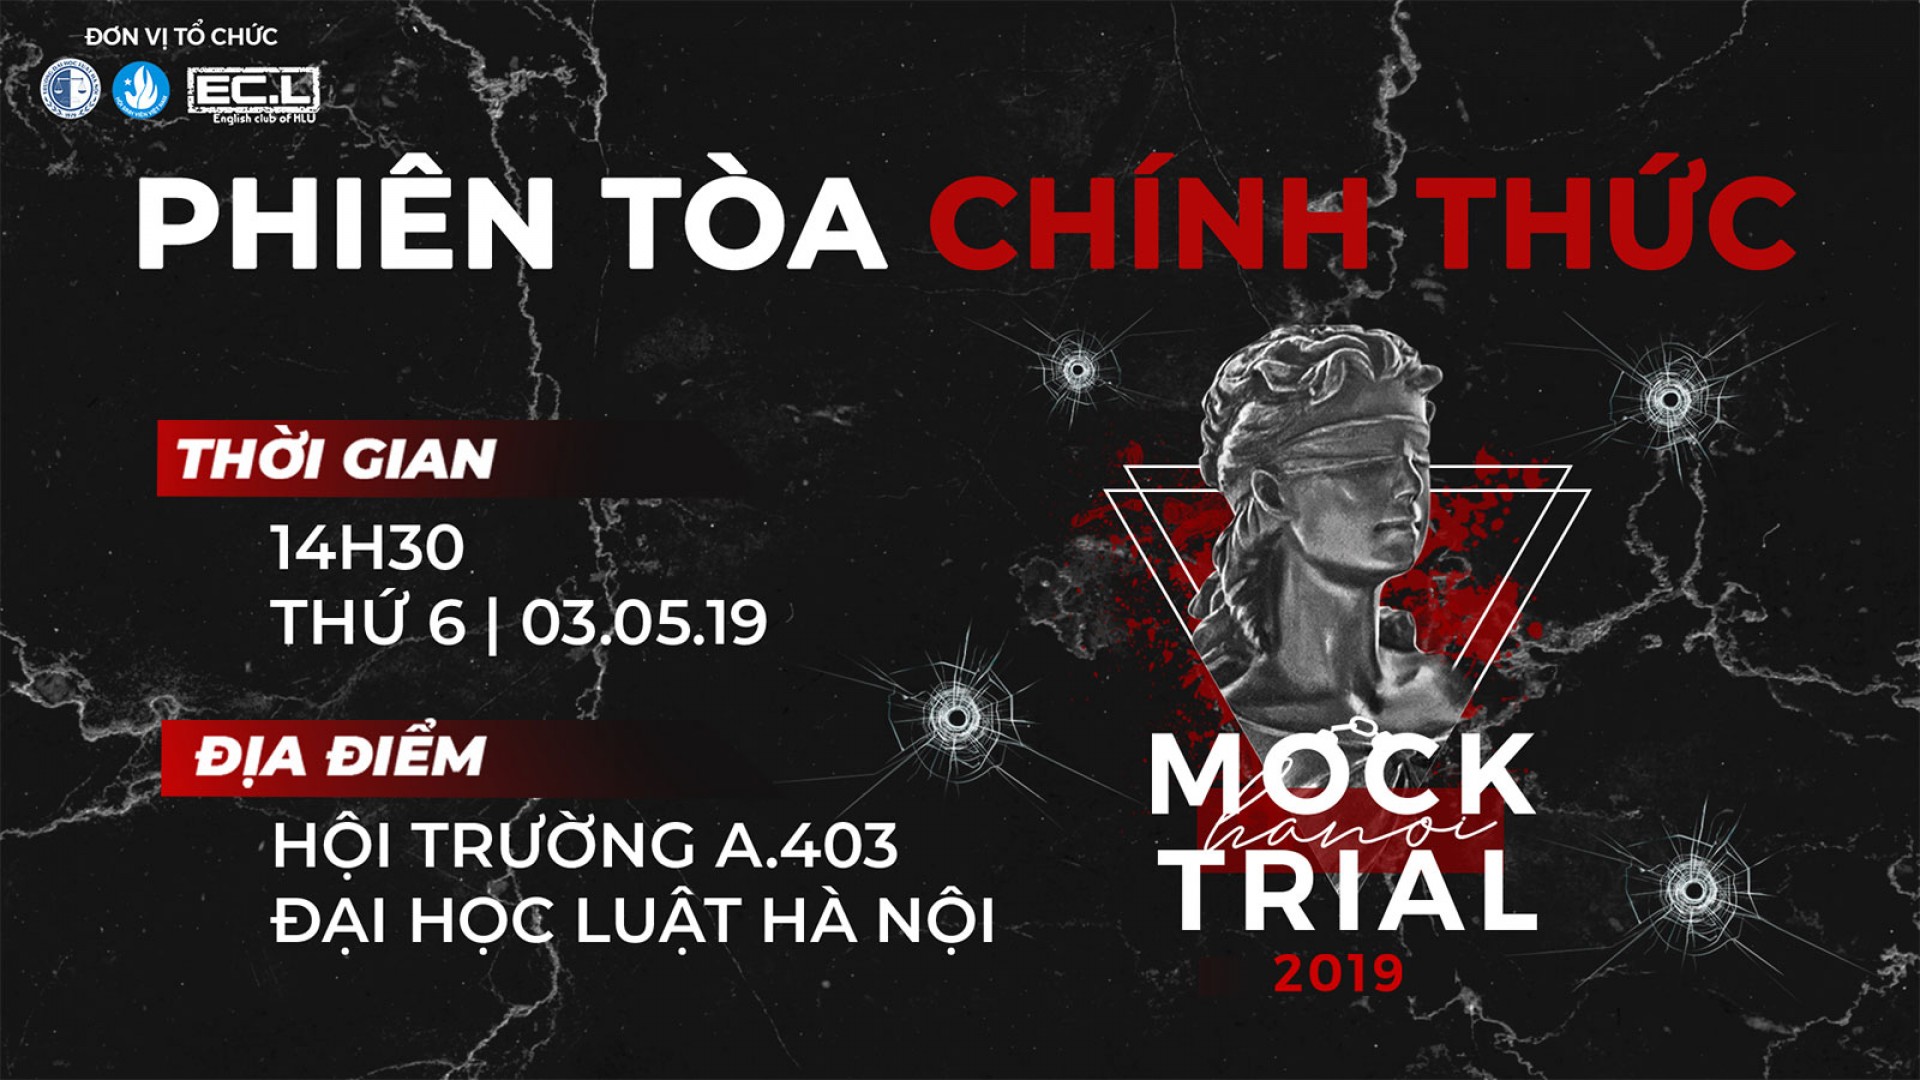 HANOI MOCK TRIAL 2019: Phiên toà chính thức